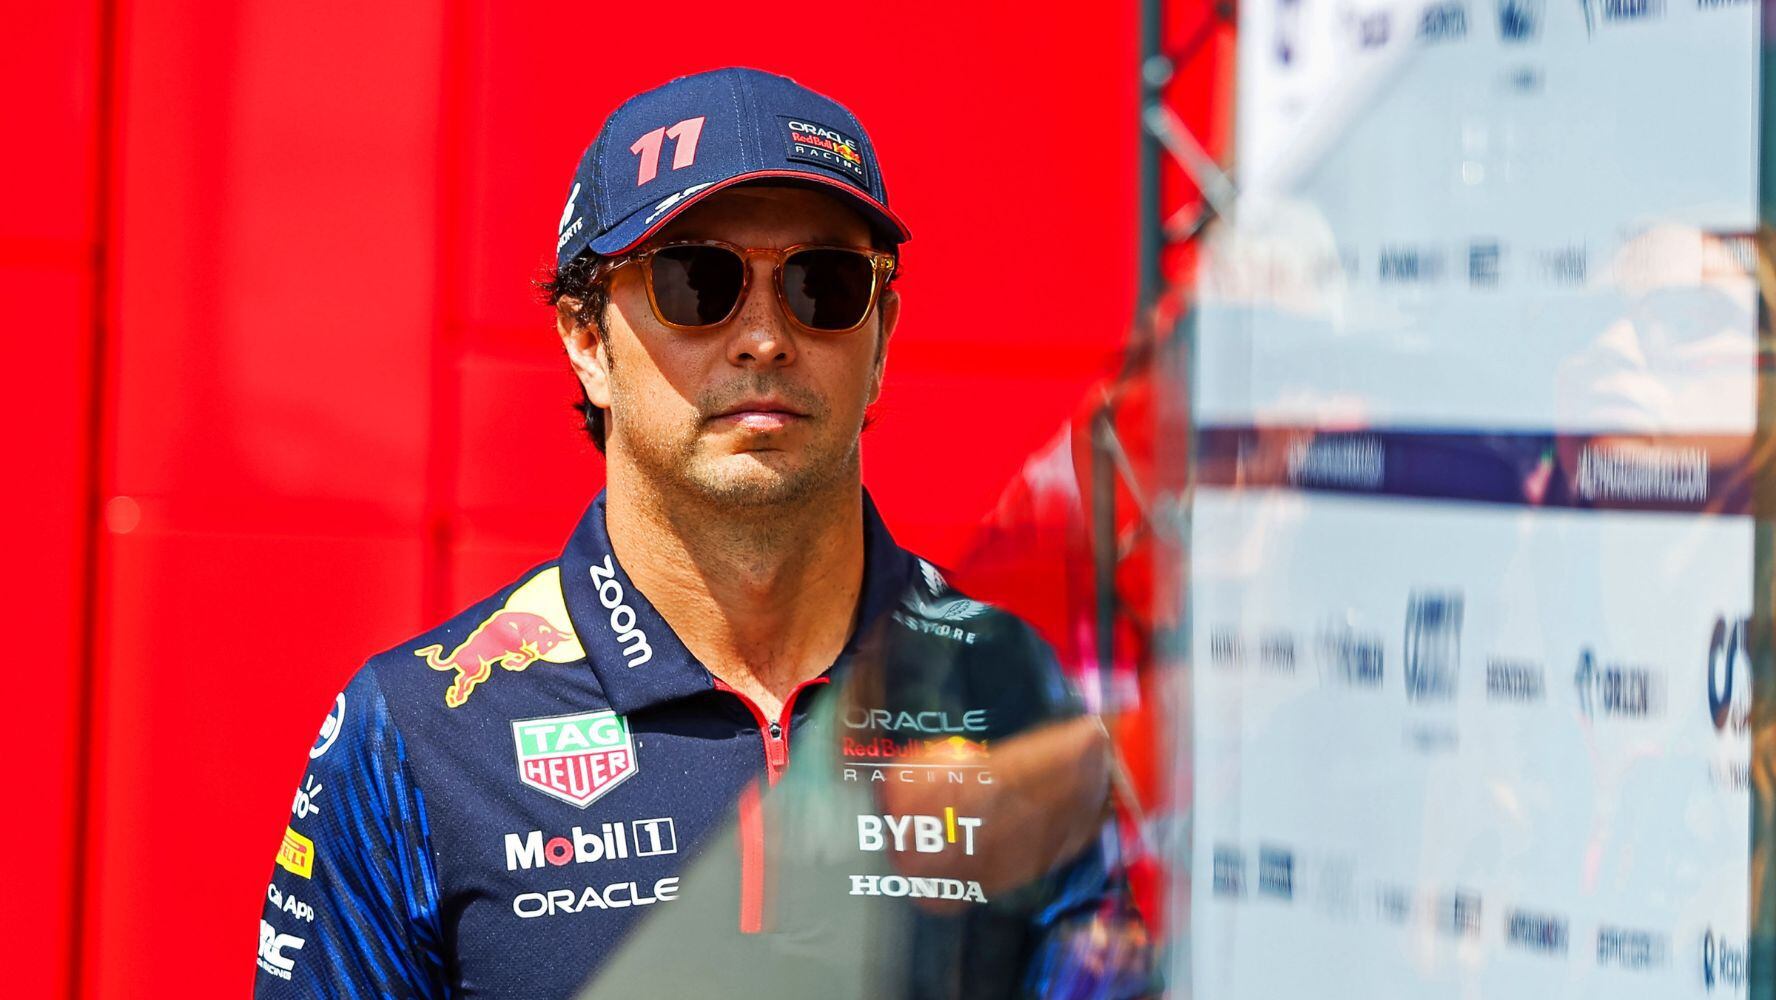 ‘Checo’ Pérez tras polémica con Verstappen en arranque del sprint del GP de Austria: ‘No lo vi’